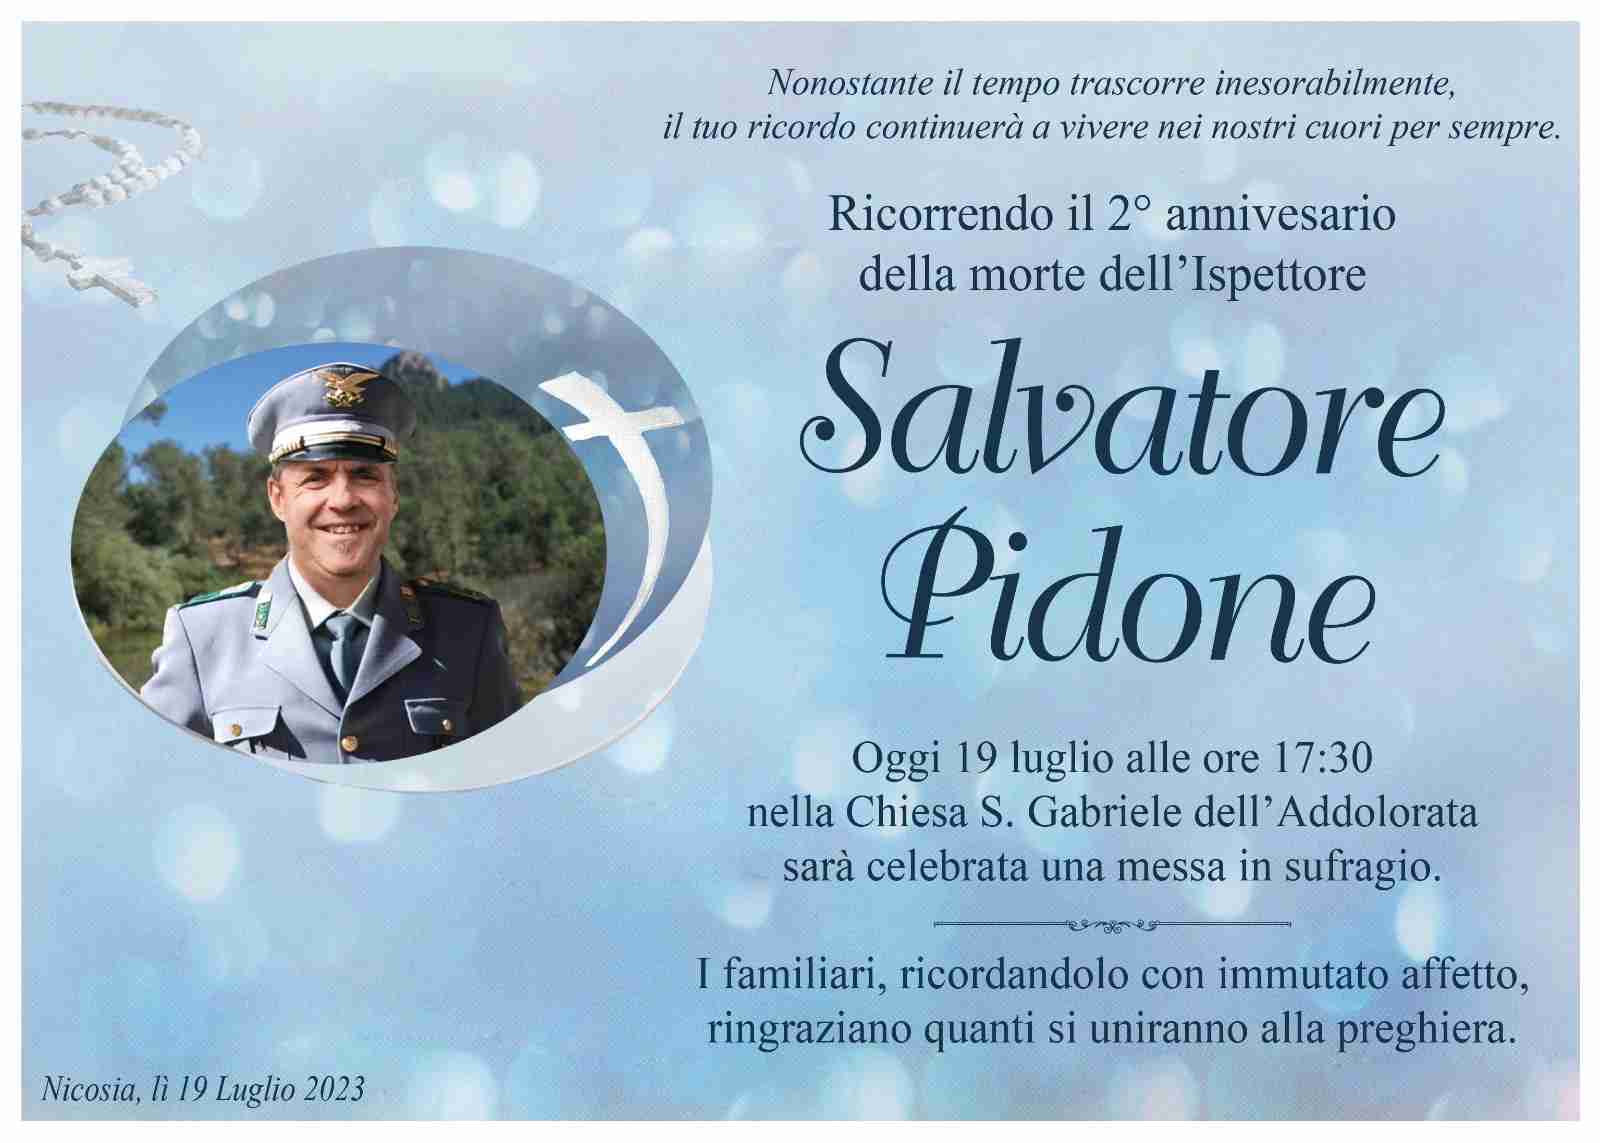 Salvatore Pidone